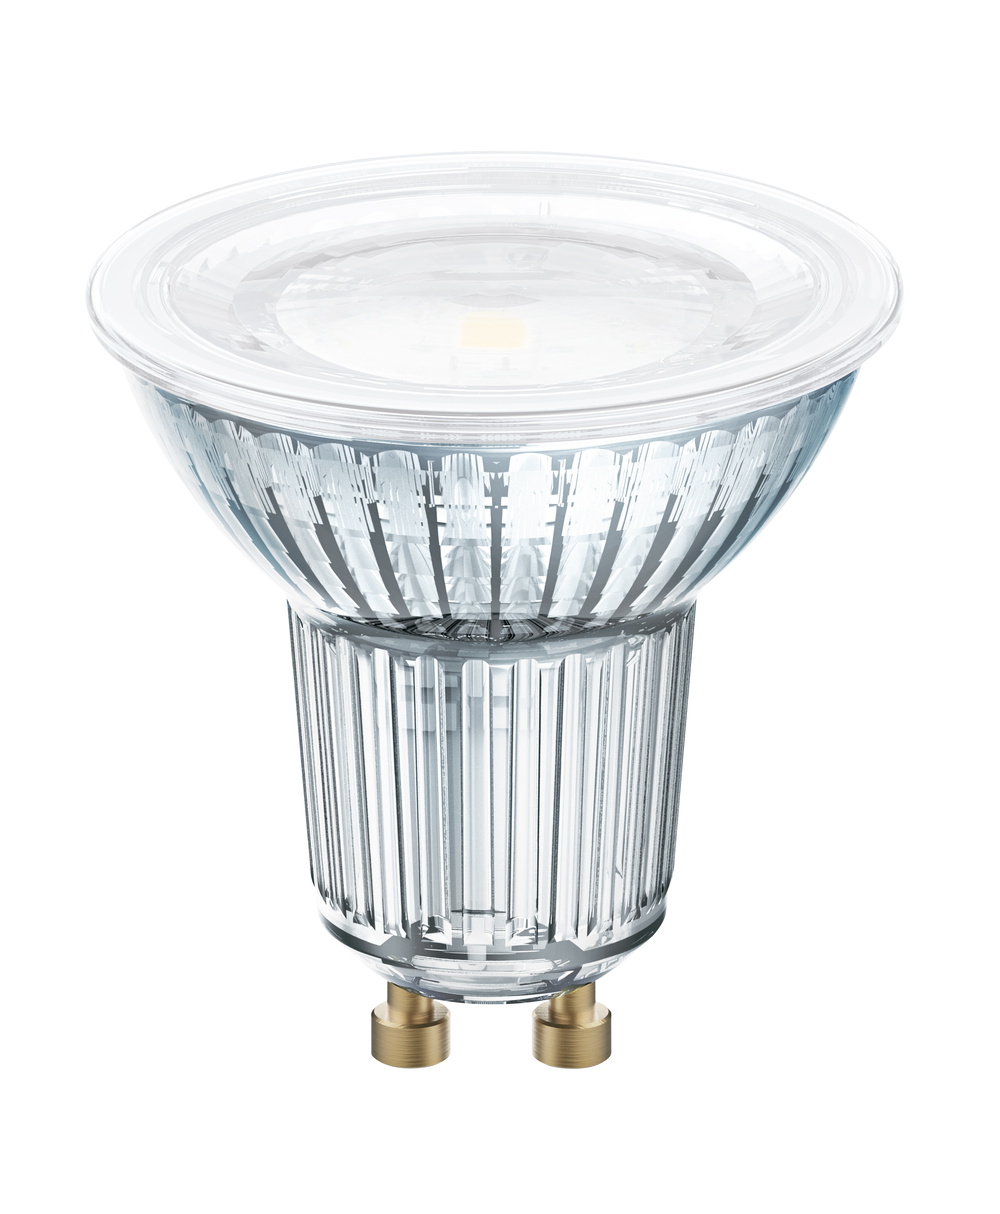 Ledvance LED lamp LED PAR16 DIM P 7.9W 930 GU10 – 4099854059094 – replacement for 51 W - 4099854059094